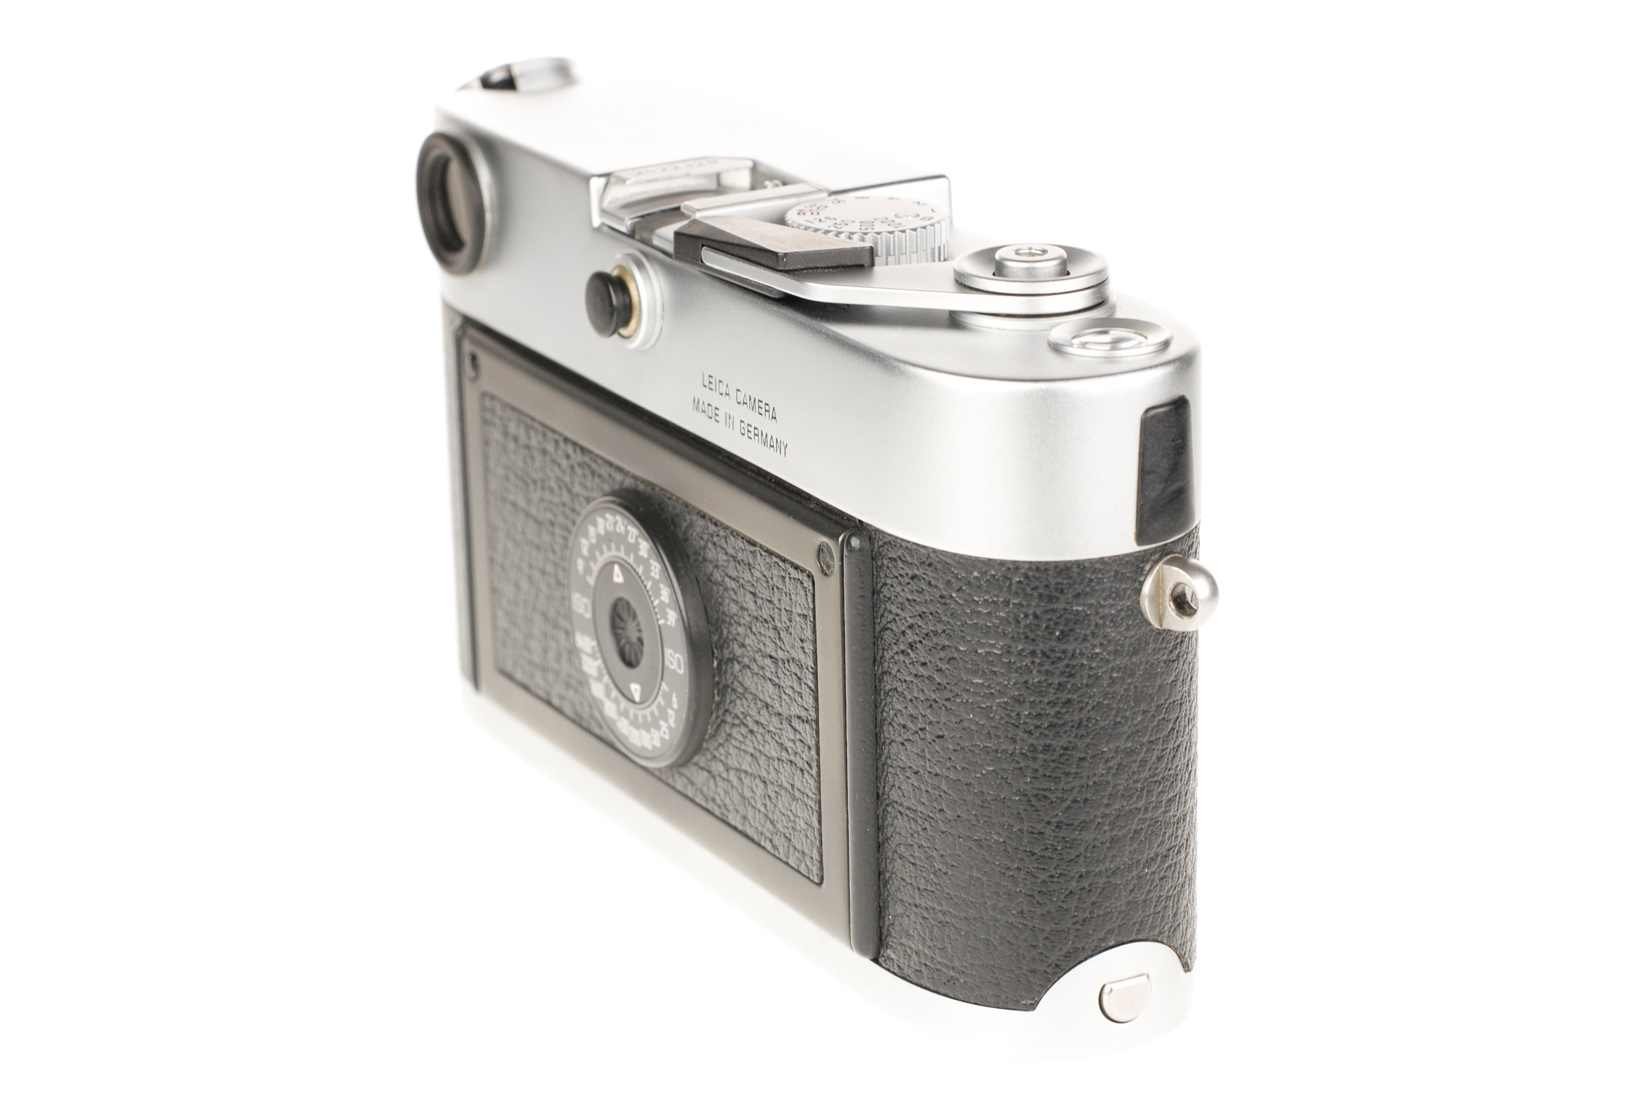 Leica M6, chrome